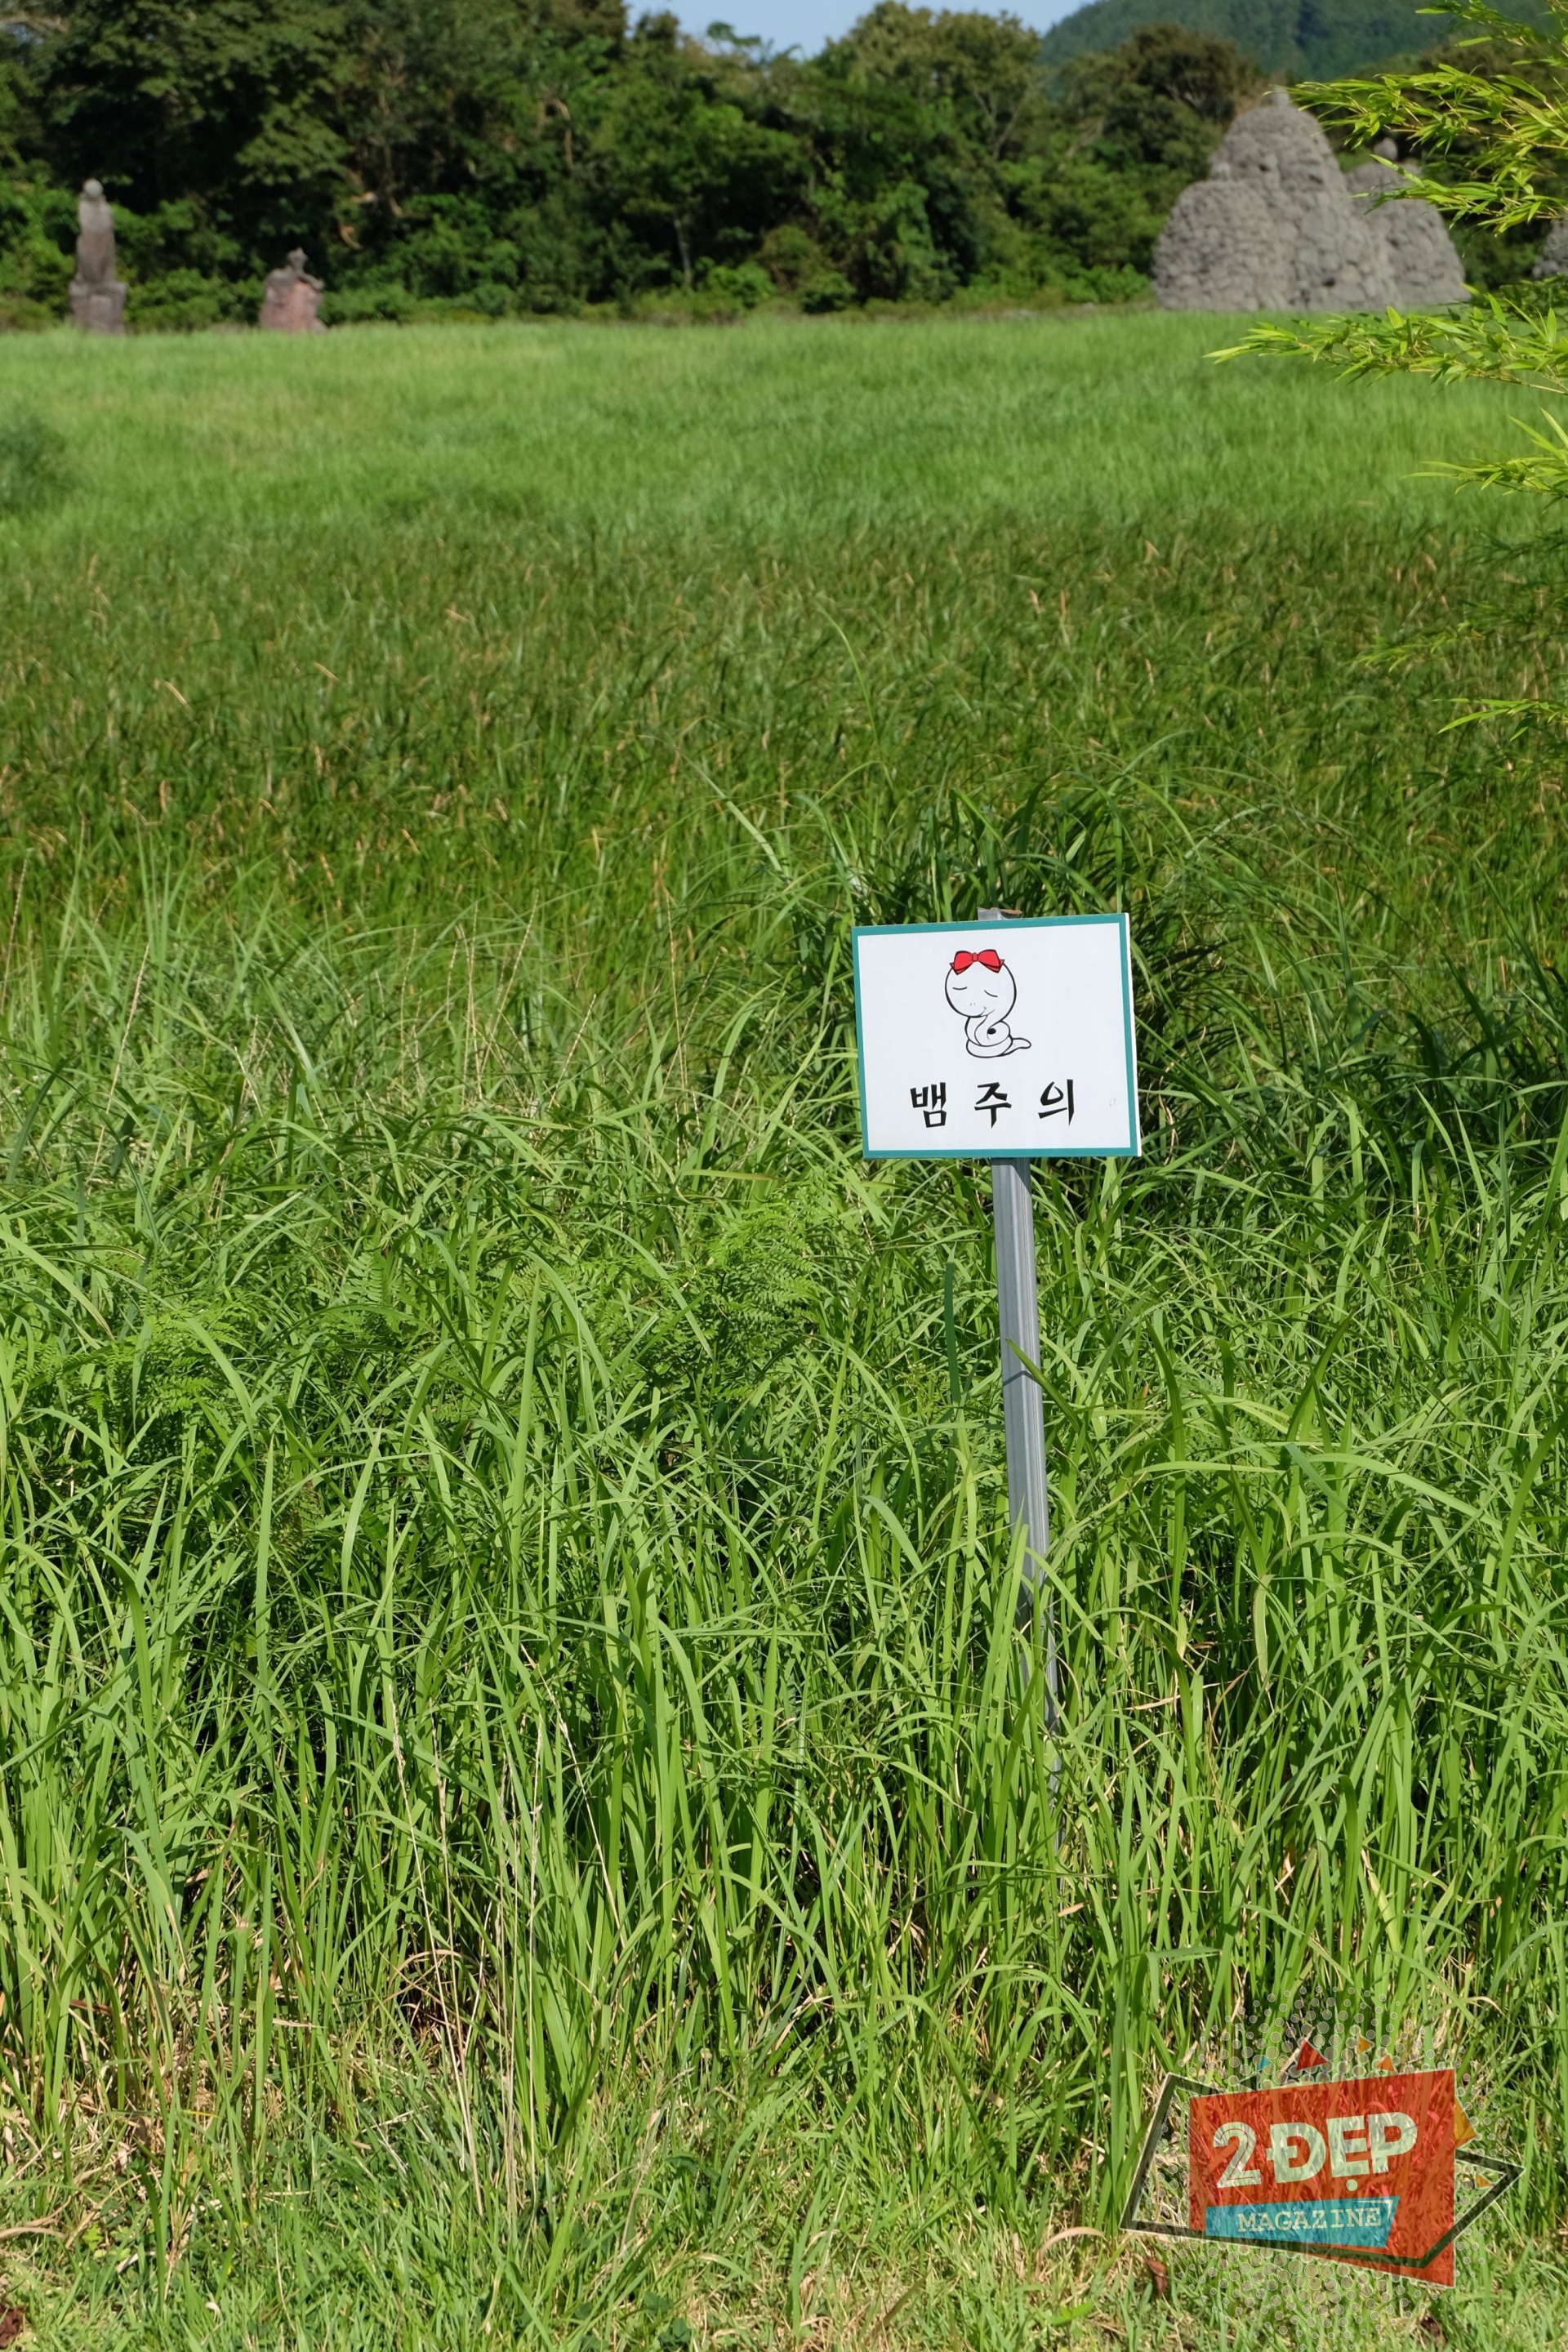 Hiện tại Jeju vẫn có những tấm biển cảnh báo có rắn thế này!